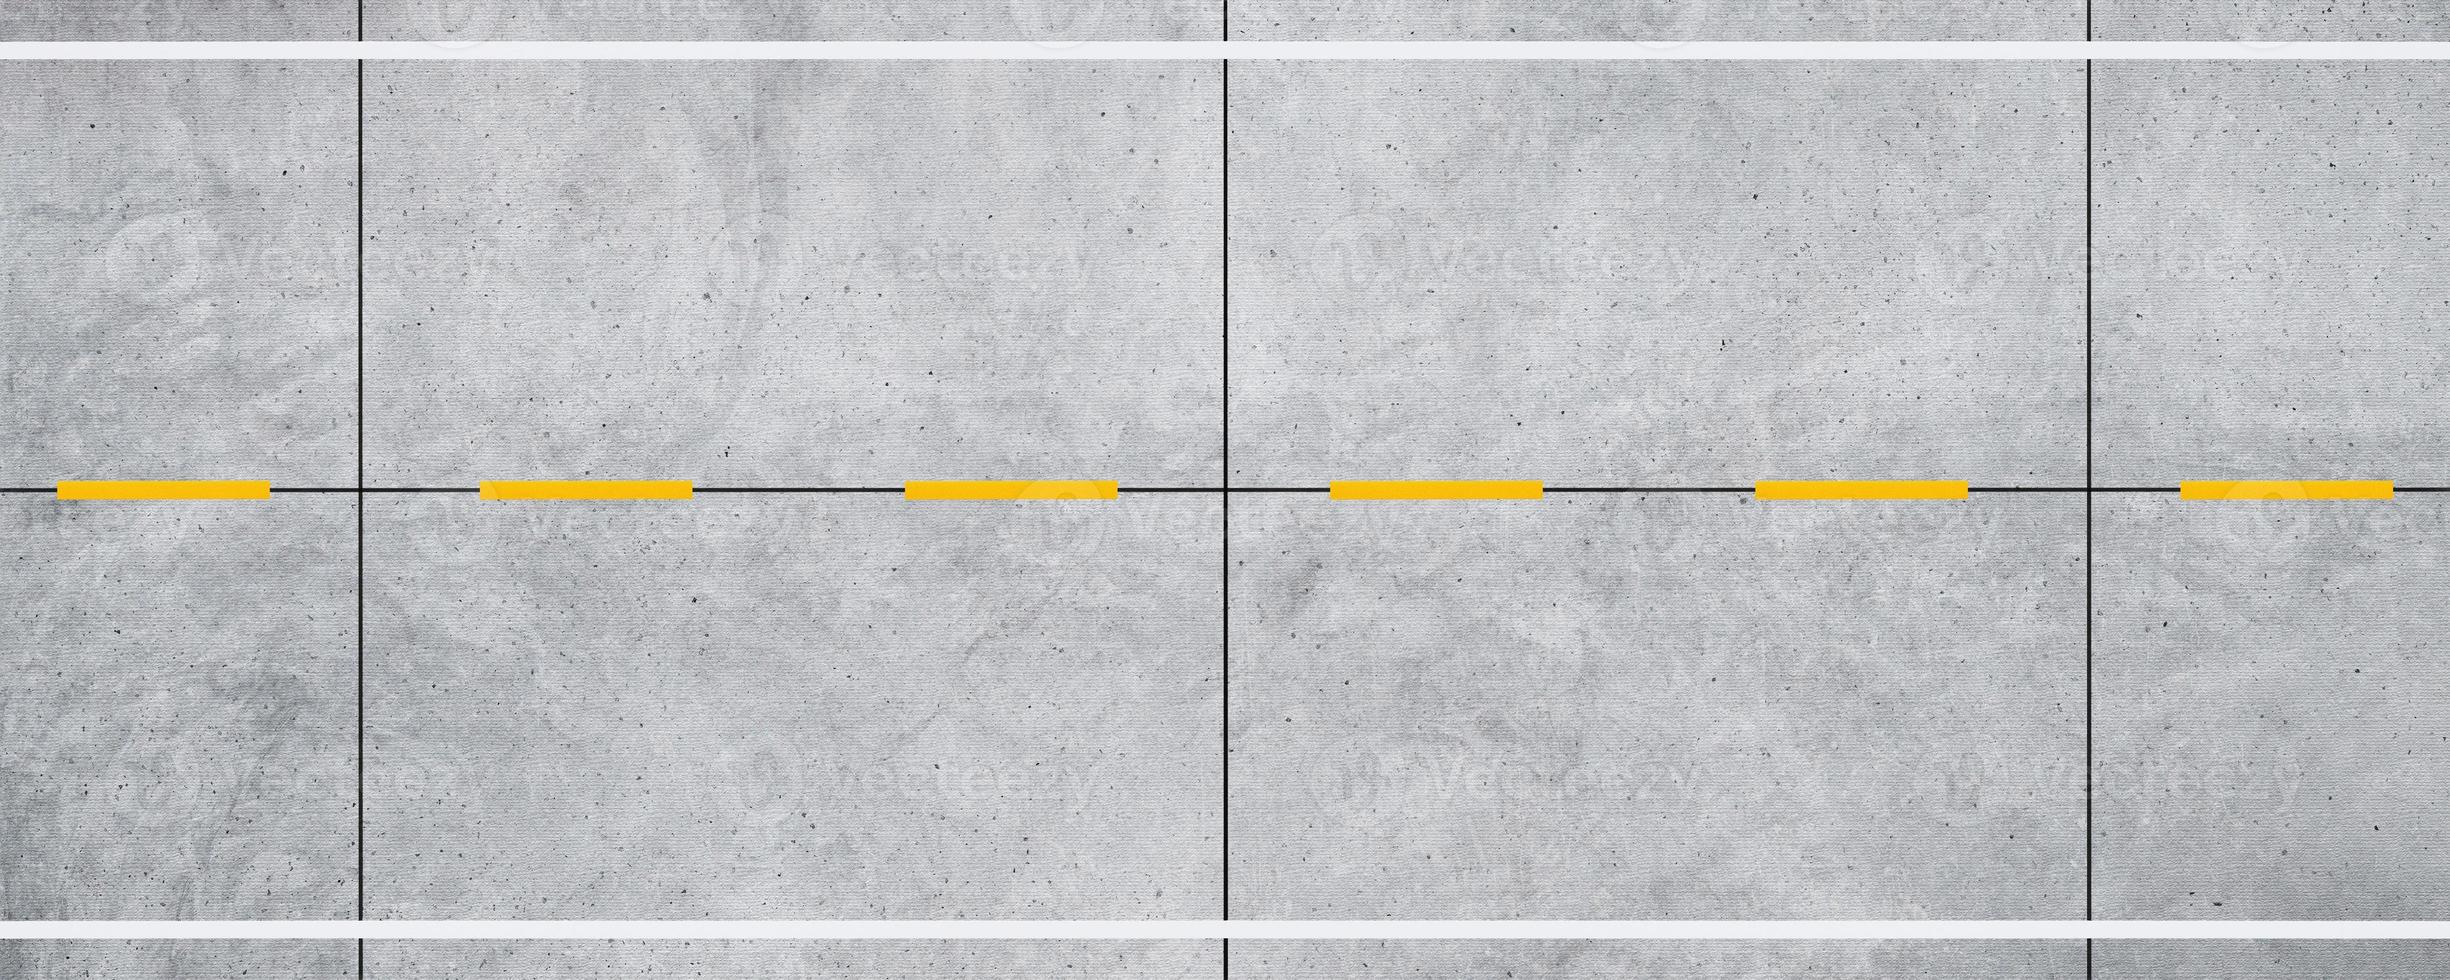 vista superior estrada de concreto vazia e fundo de linhas divisórias brancas e amarelas. foto